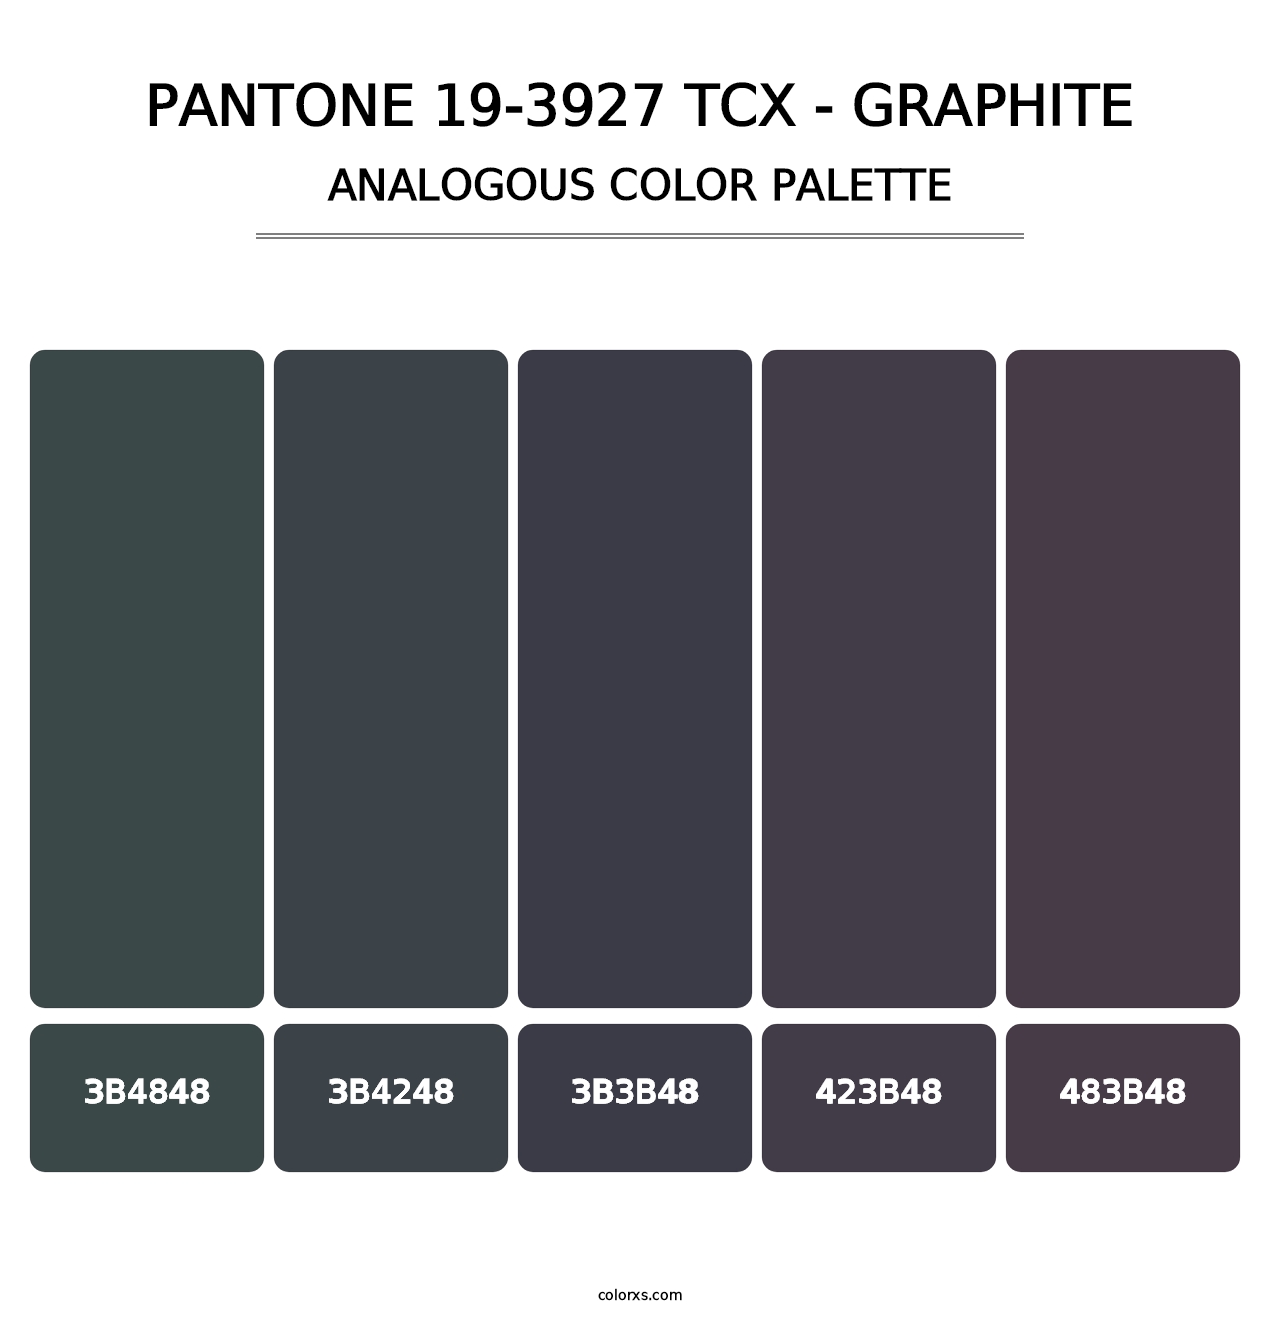 PANTONE 19-3927 TCX - Graphite - Analogous Color Palette